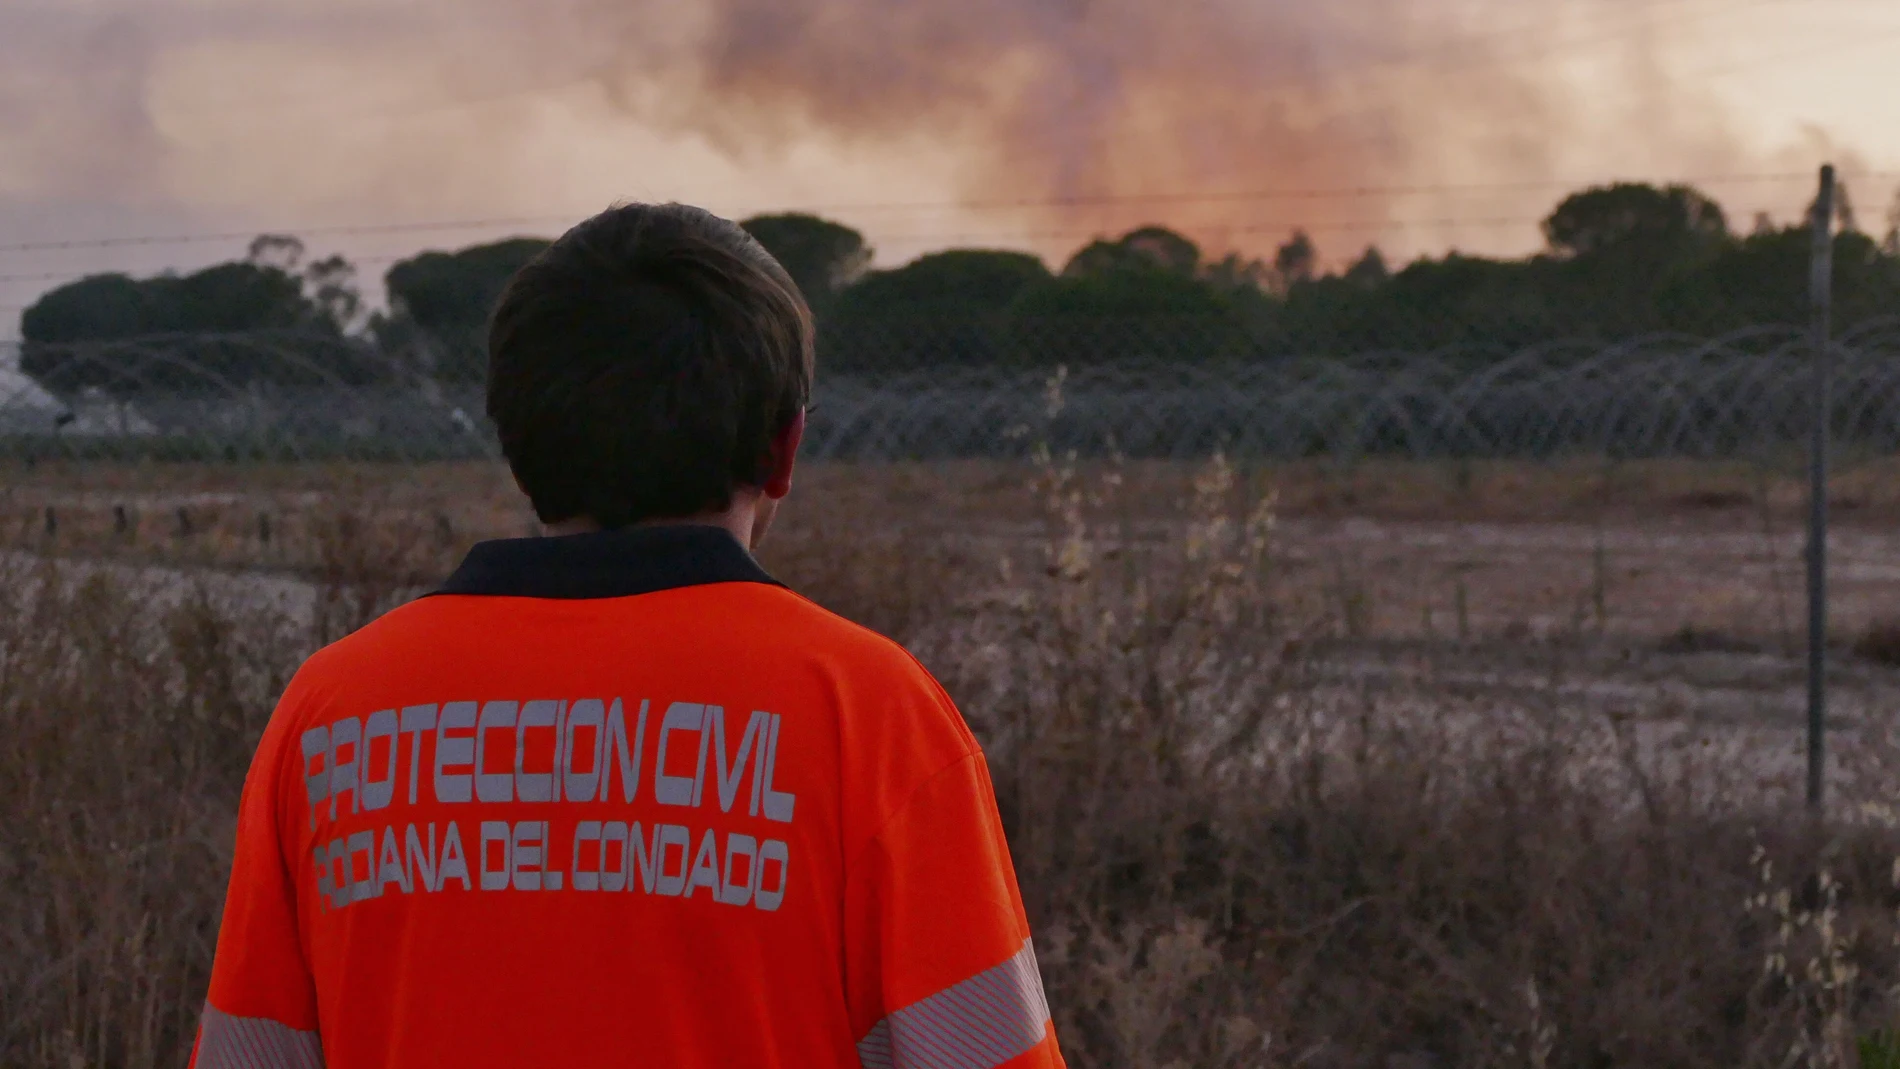 El incendio forestal declarado en el paraje "El Corchito" de Bonares, en Huelva, ha alcanzado los términos municipales de Rociana y Almonte